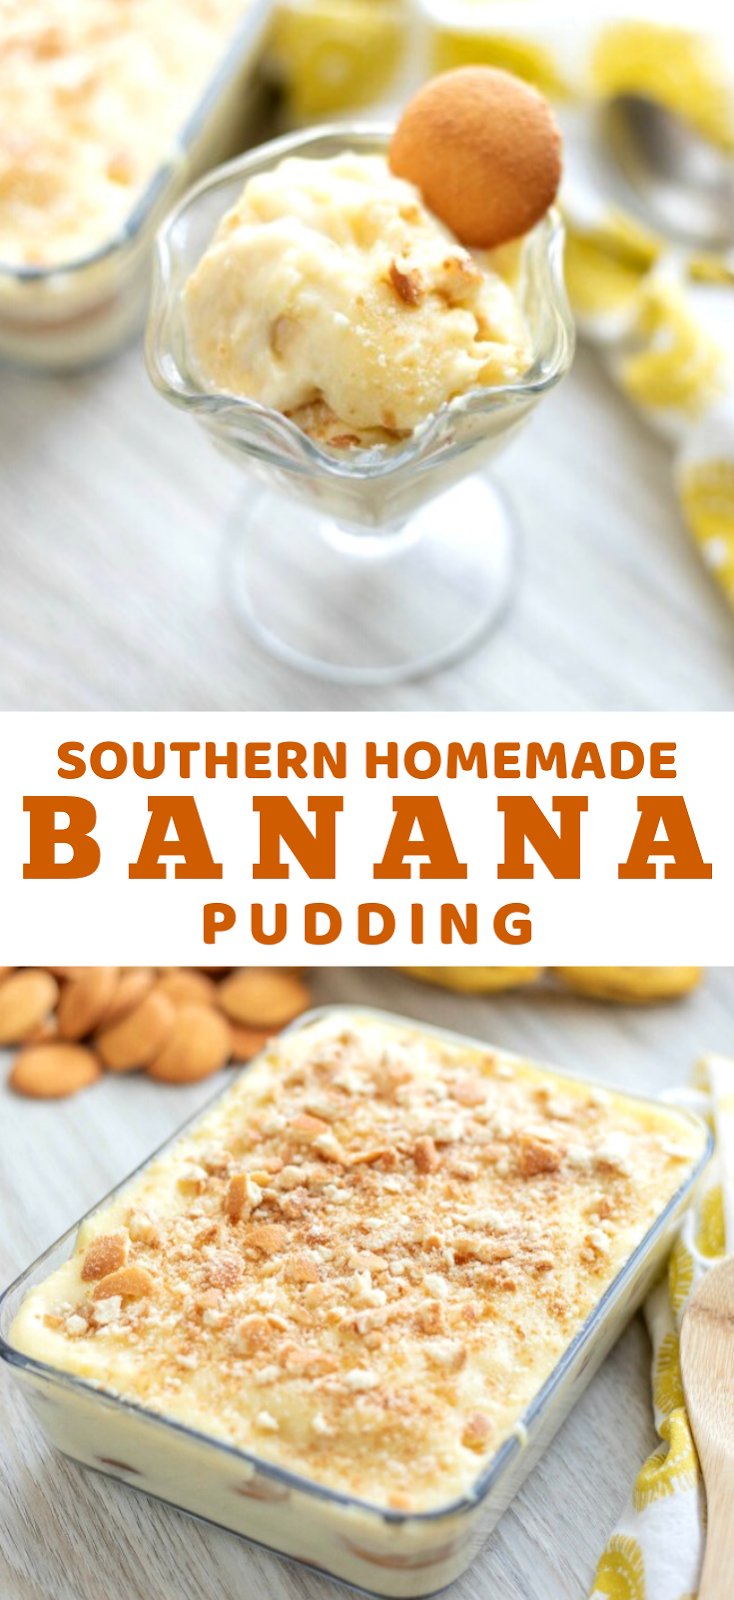 Southern Homemade Banana Pudding